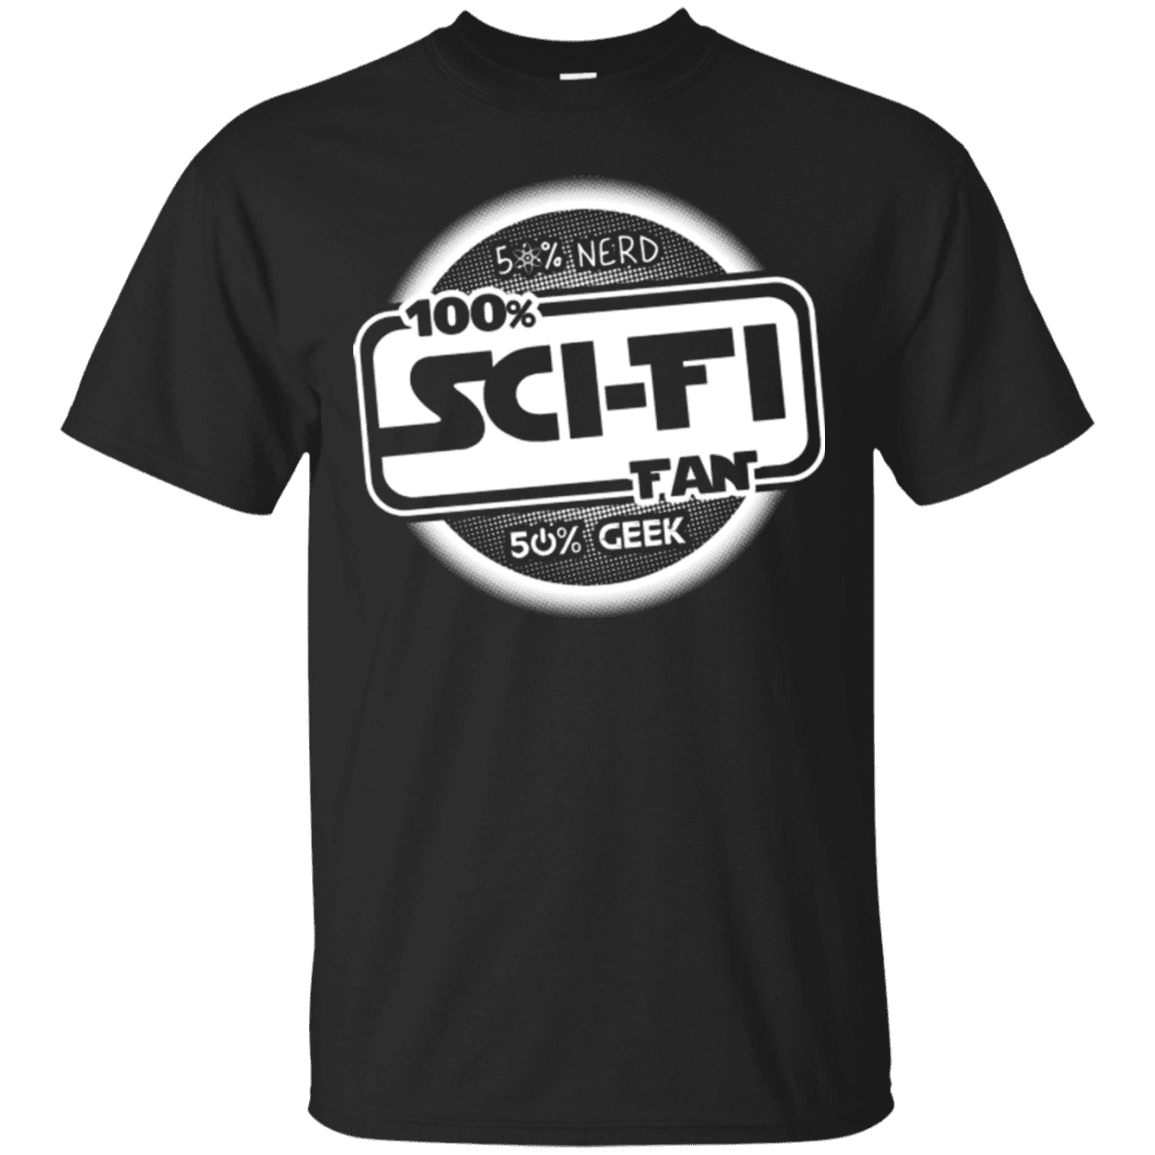 T-Shirts Black / Small 100 Percent Sci-fi T-Shirt